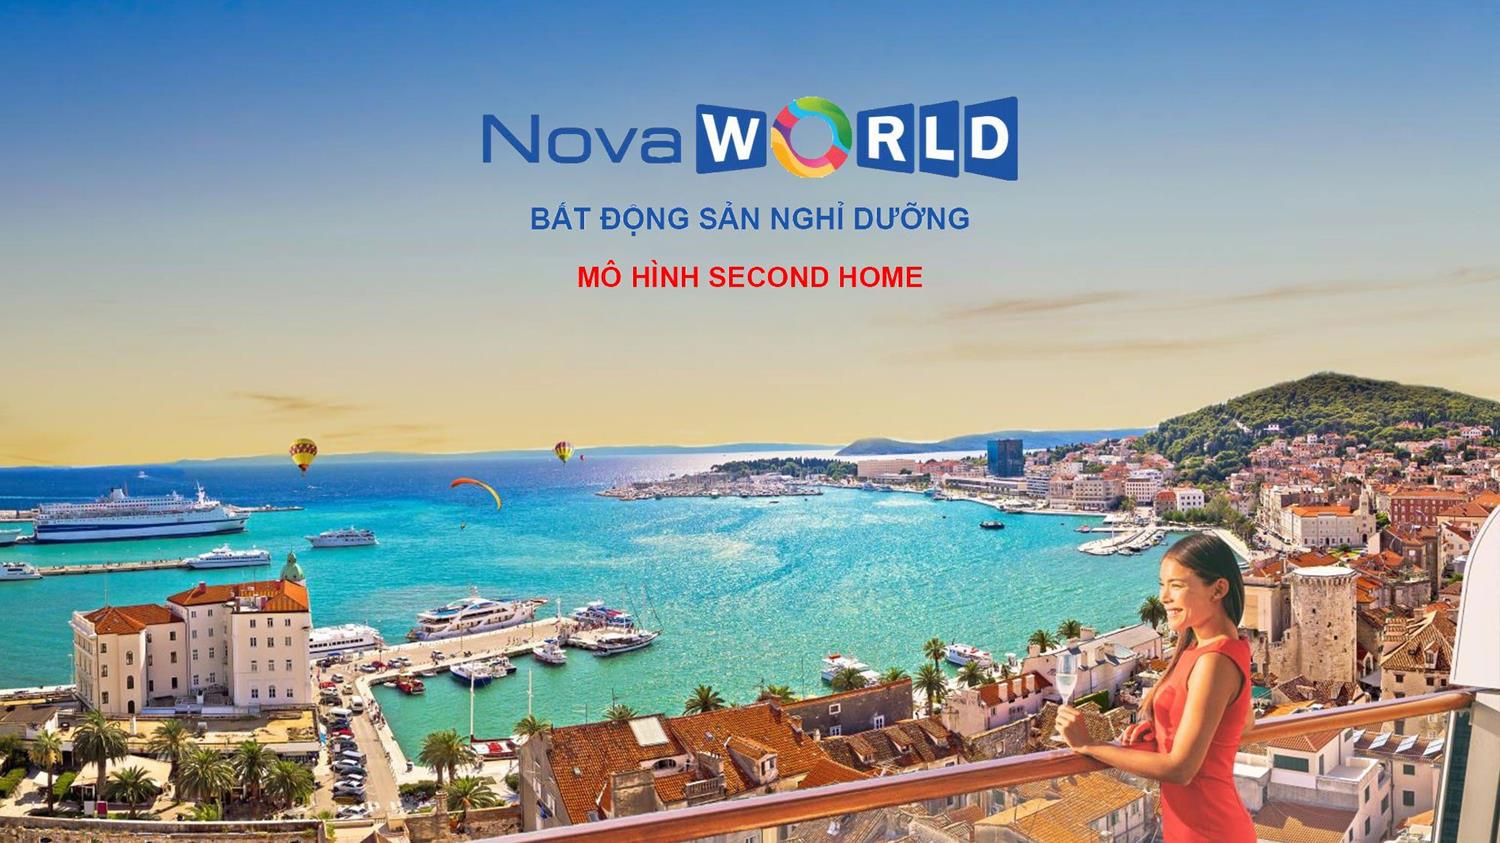 NovaWorld: Điểm đến Du lịch – Nghỉ dưỡng – Sức khỏe cho cả gia đình 3 thế hệ